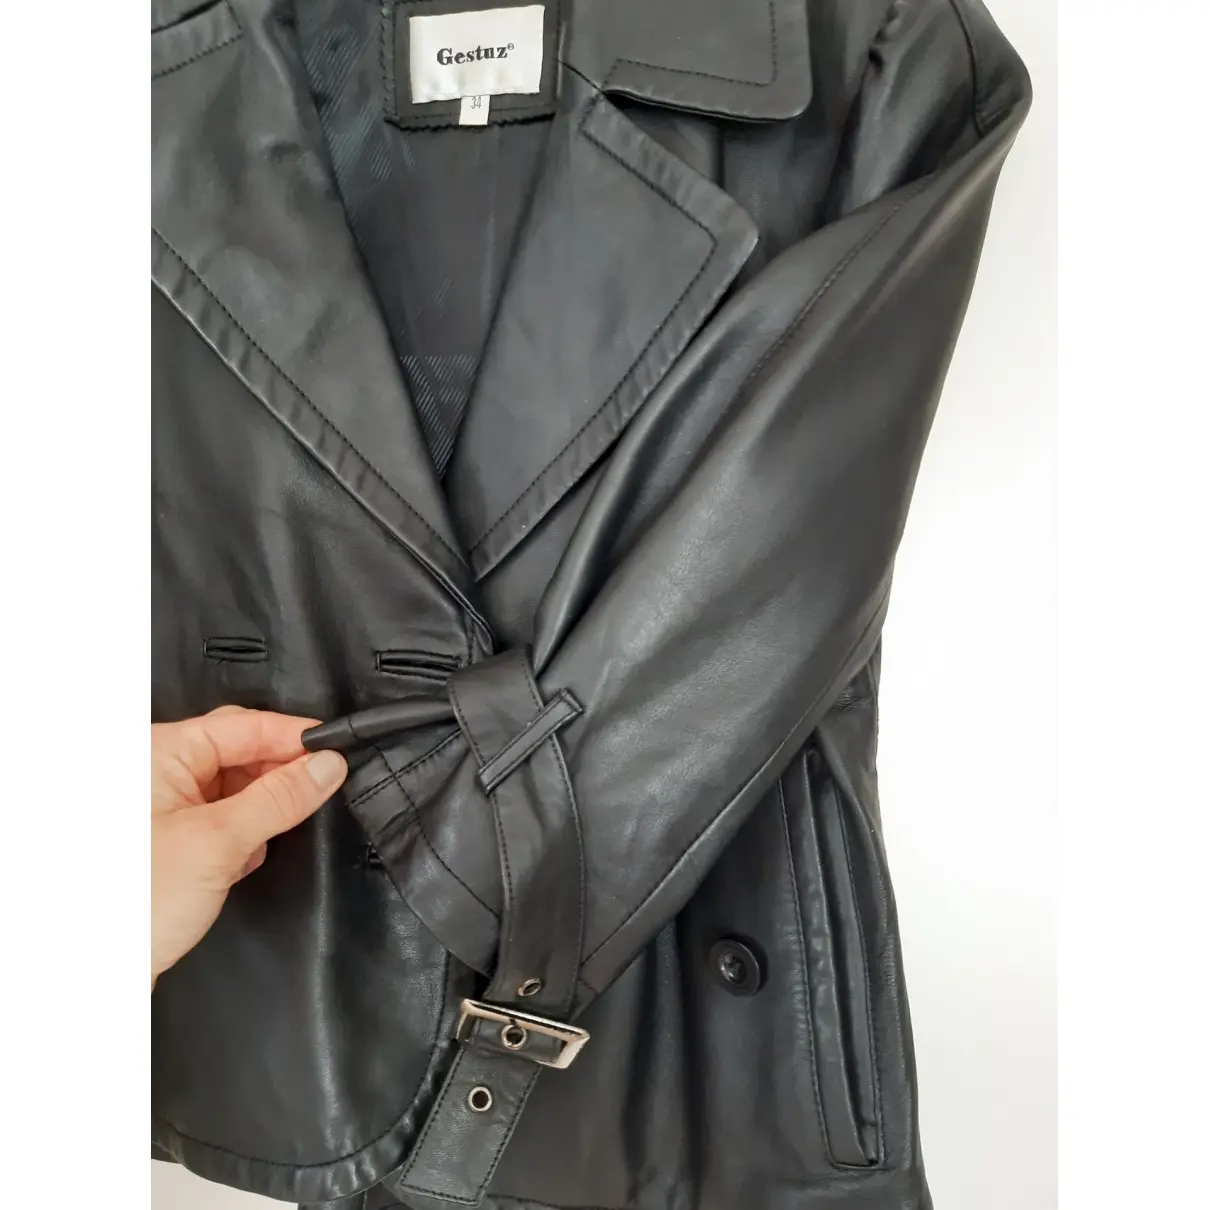 Buy Gestuz Leather short vest online